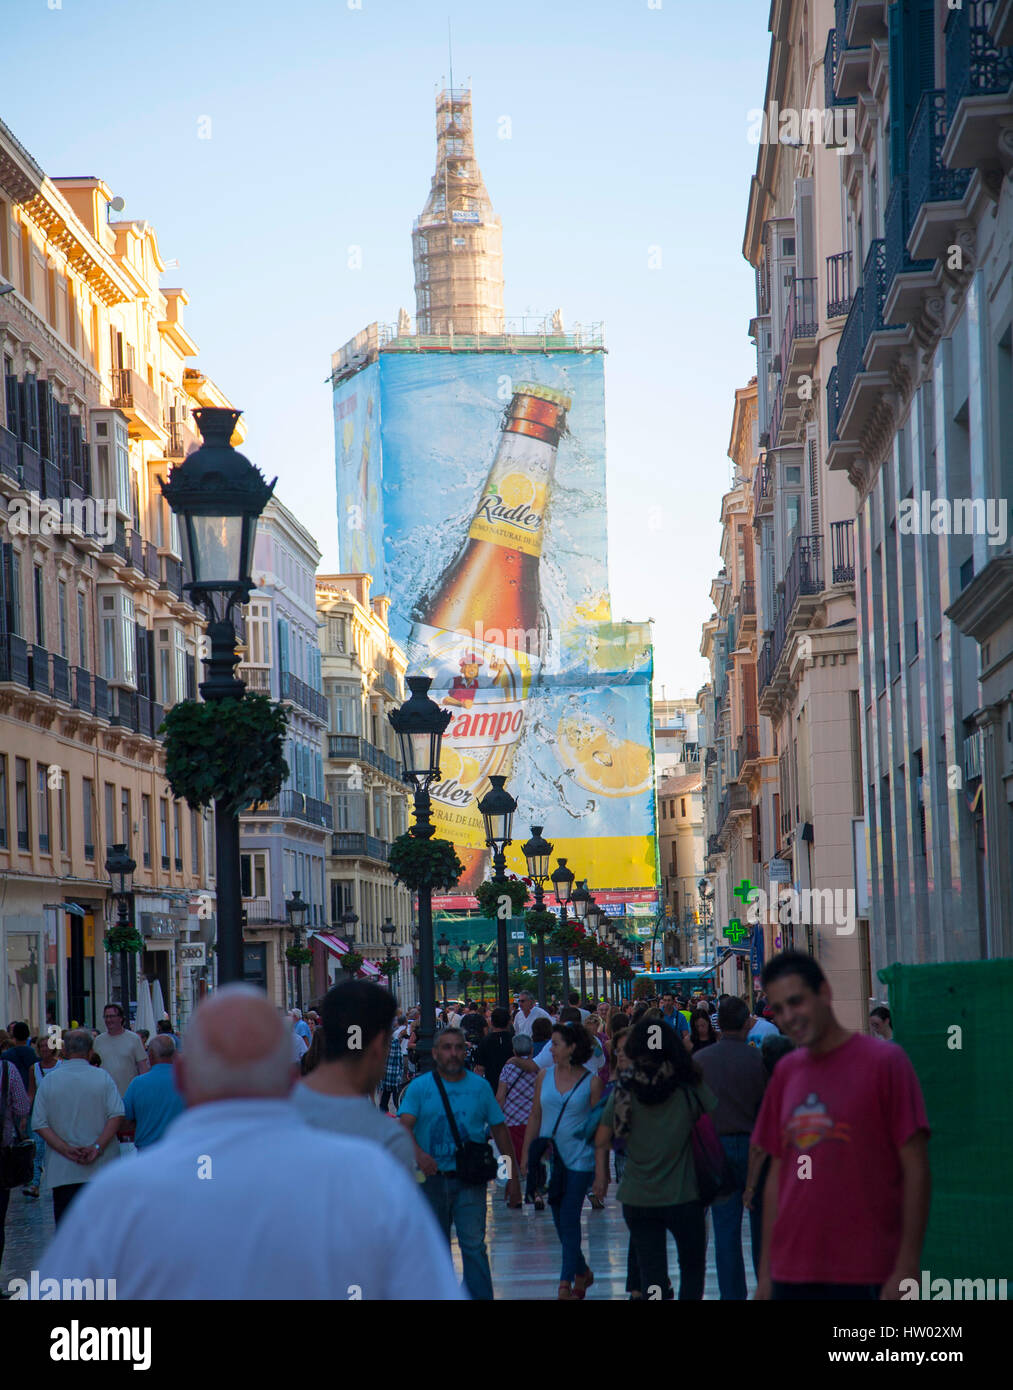 Belebten Einkaufsstraße Calle Marques de Larios, Stadtzentrum Malaga, Spanien großes Plakat Bier Werbung Stockfoto